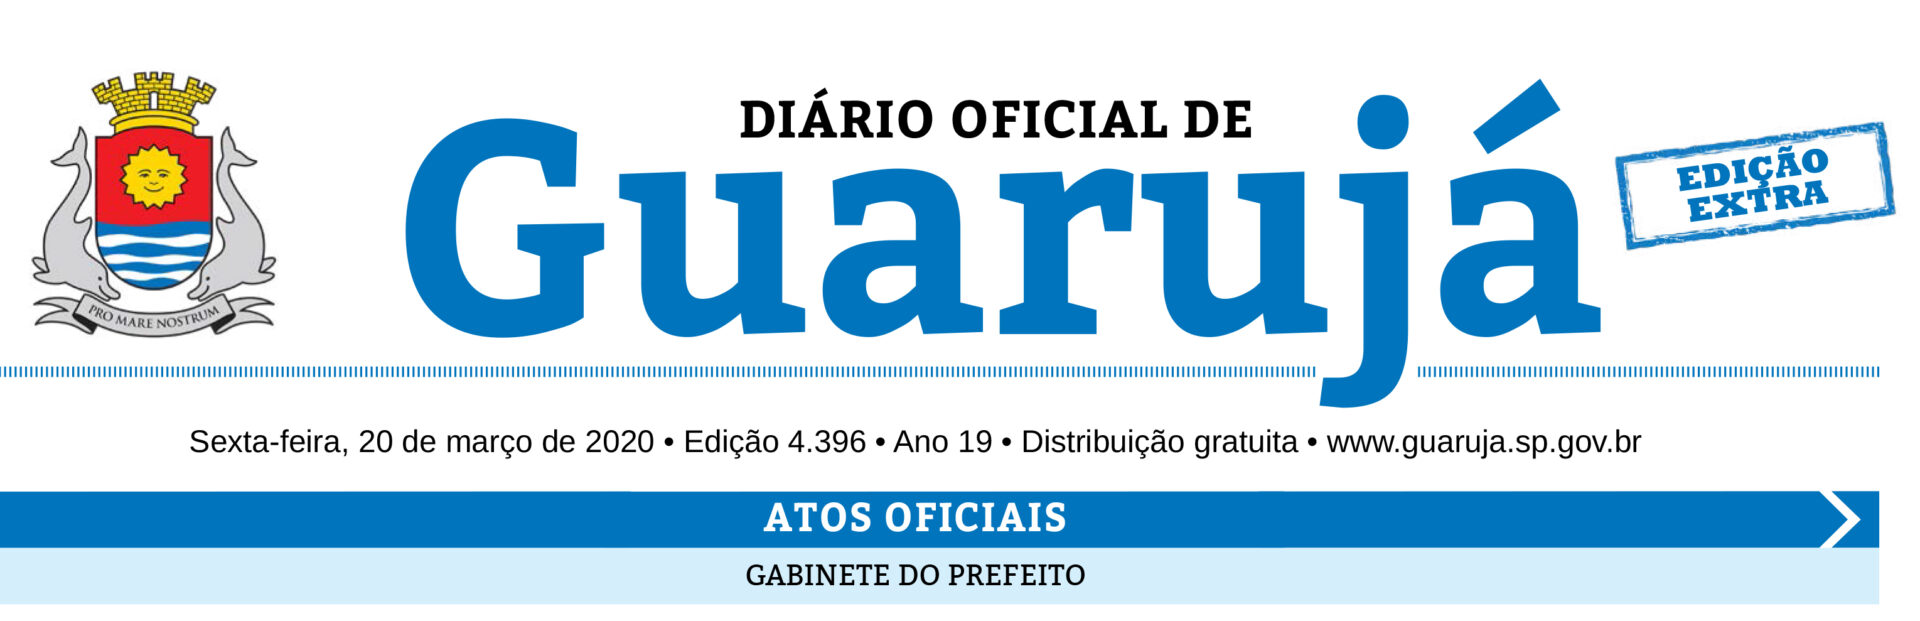 Diário Oficial do Guarujá